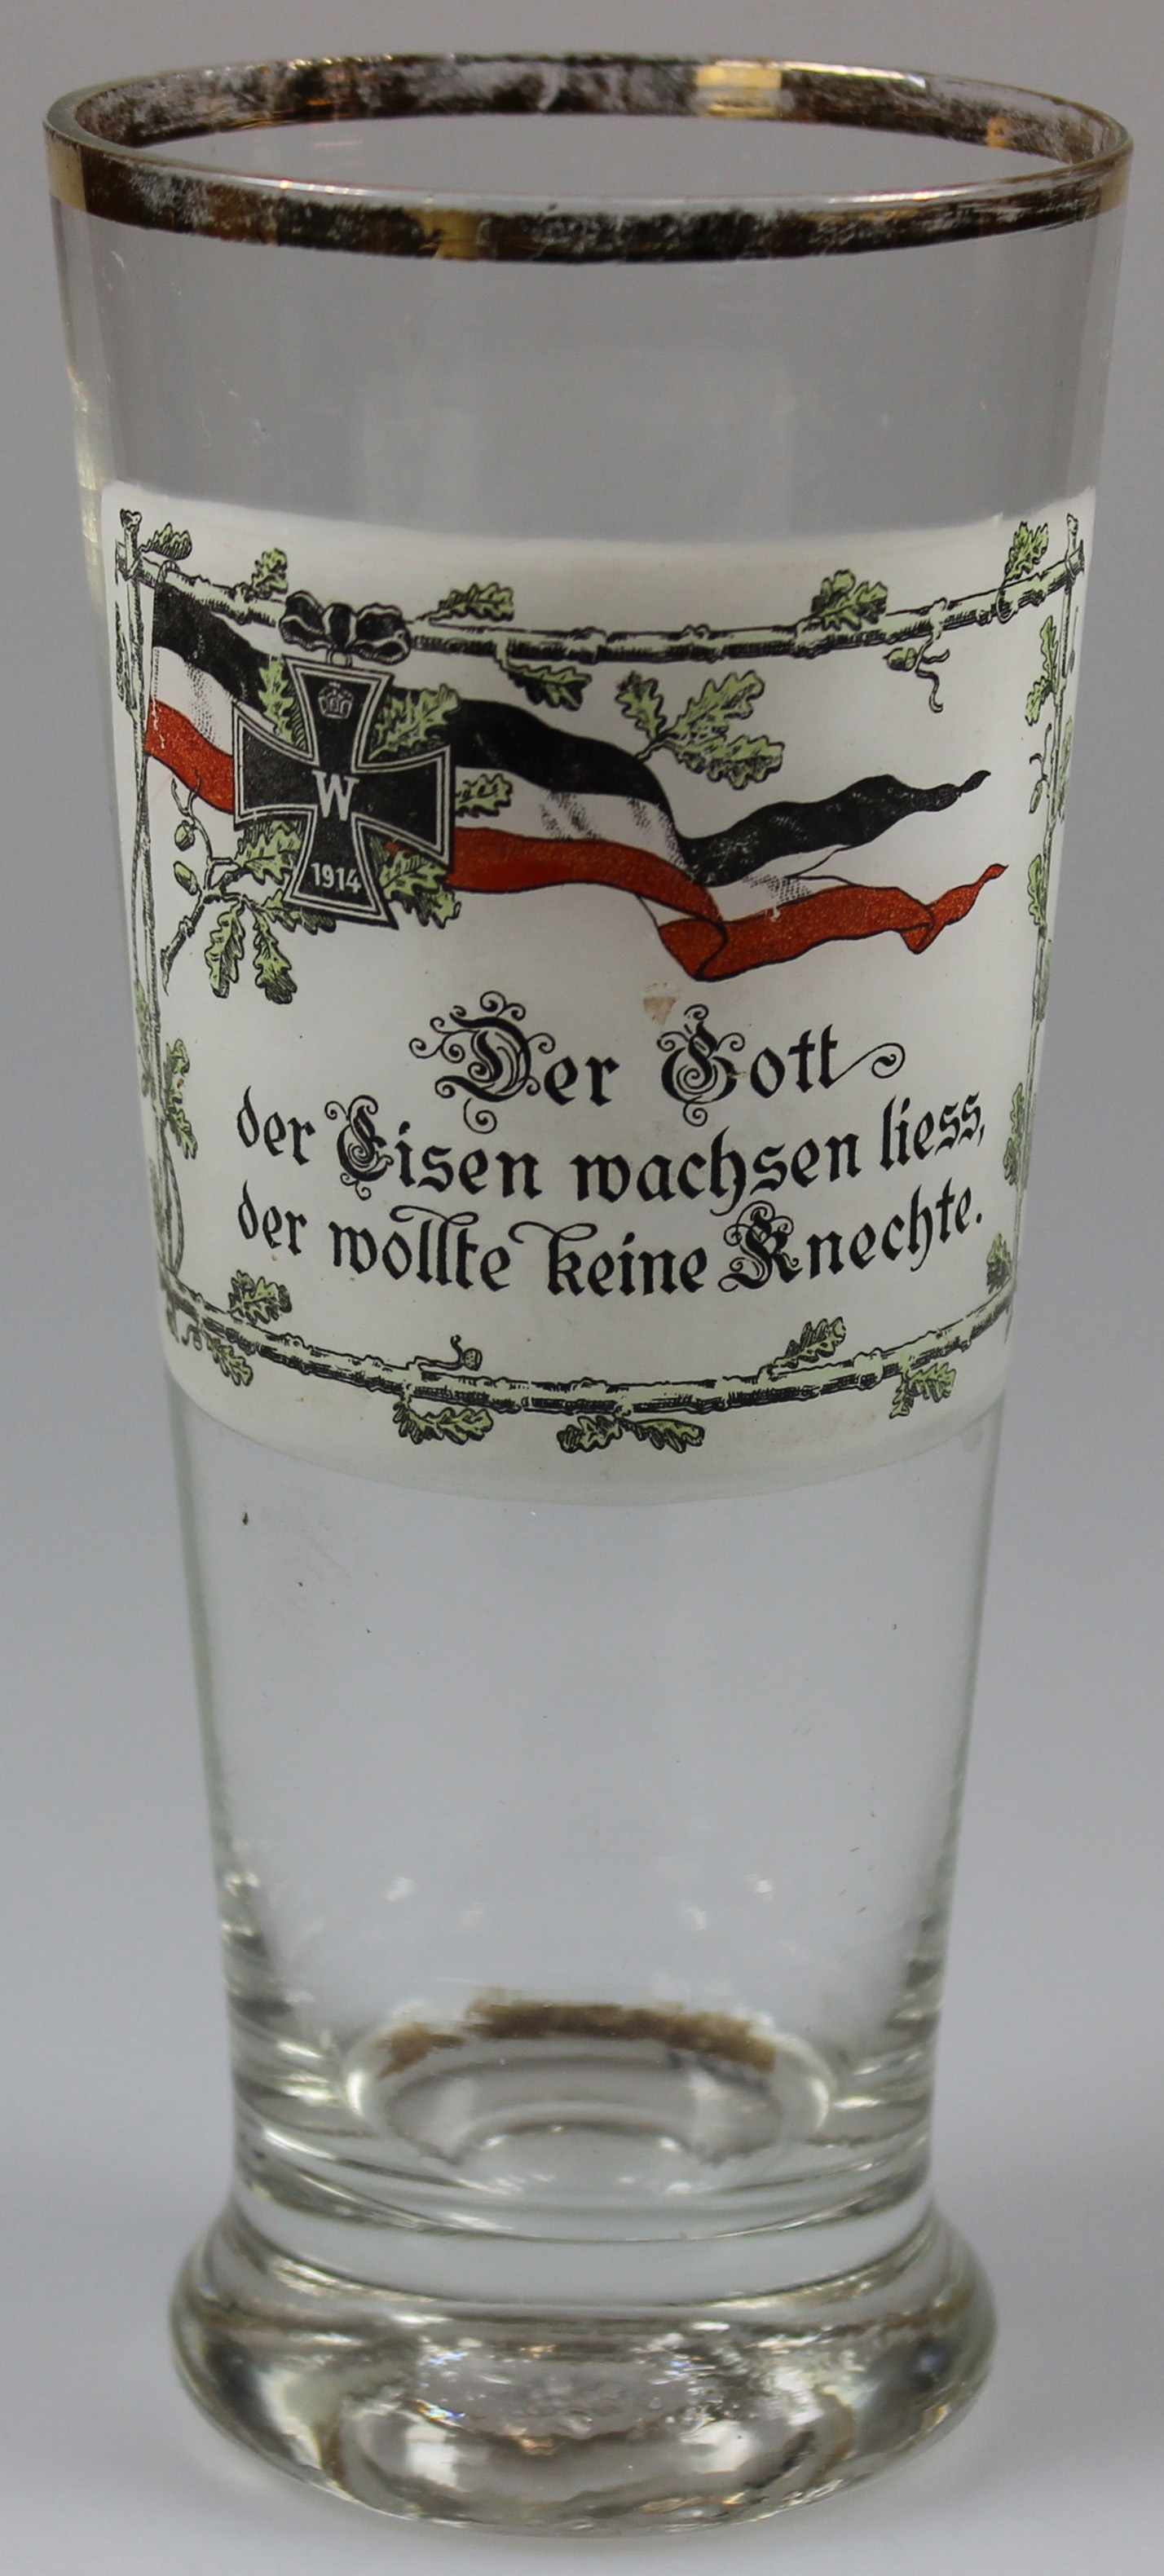 Trinkglas, Der Gott, der Eisen wachsen liess..., 1914 (Museum Wolmirstedt RR-F)